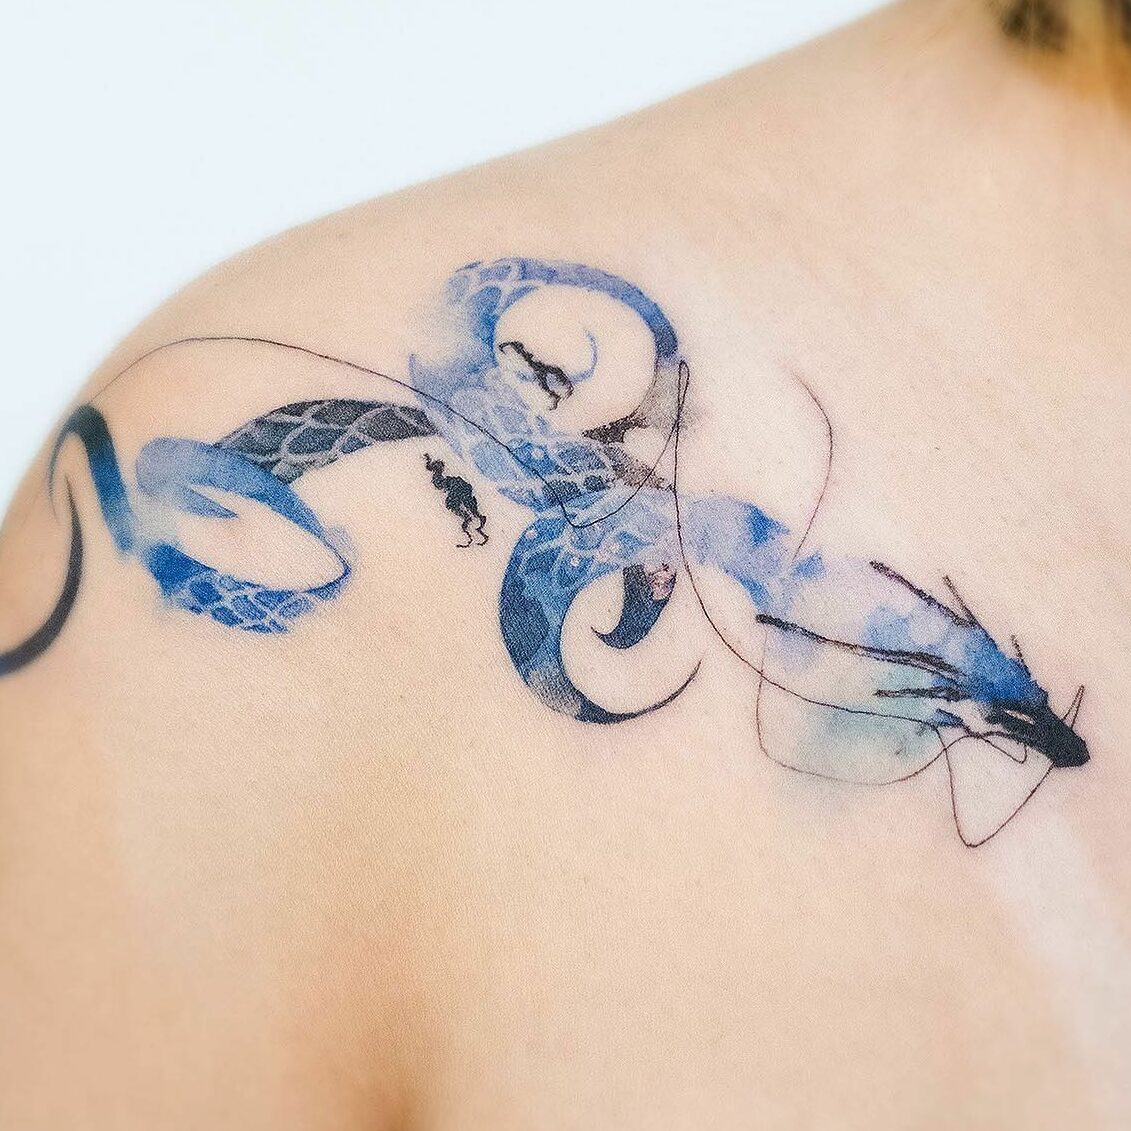 Blue dragon tattoo by indigo.yh edited